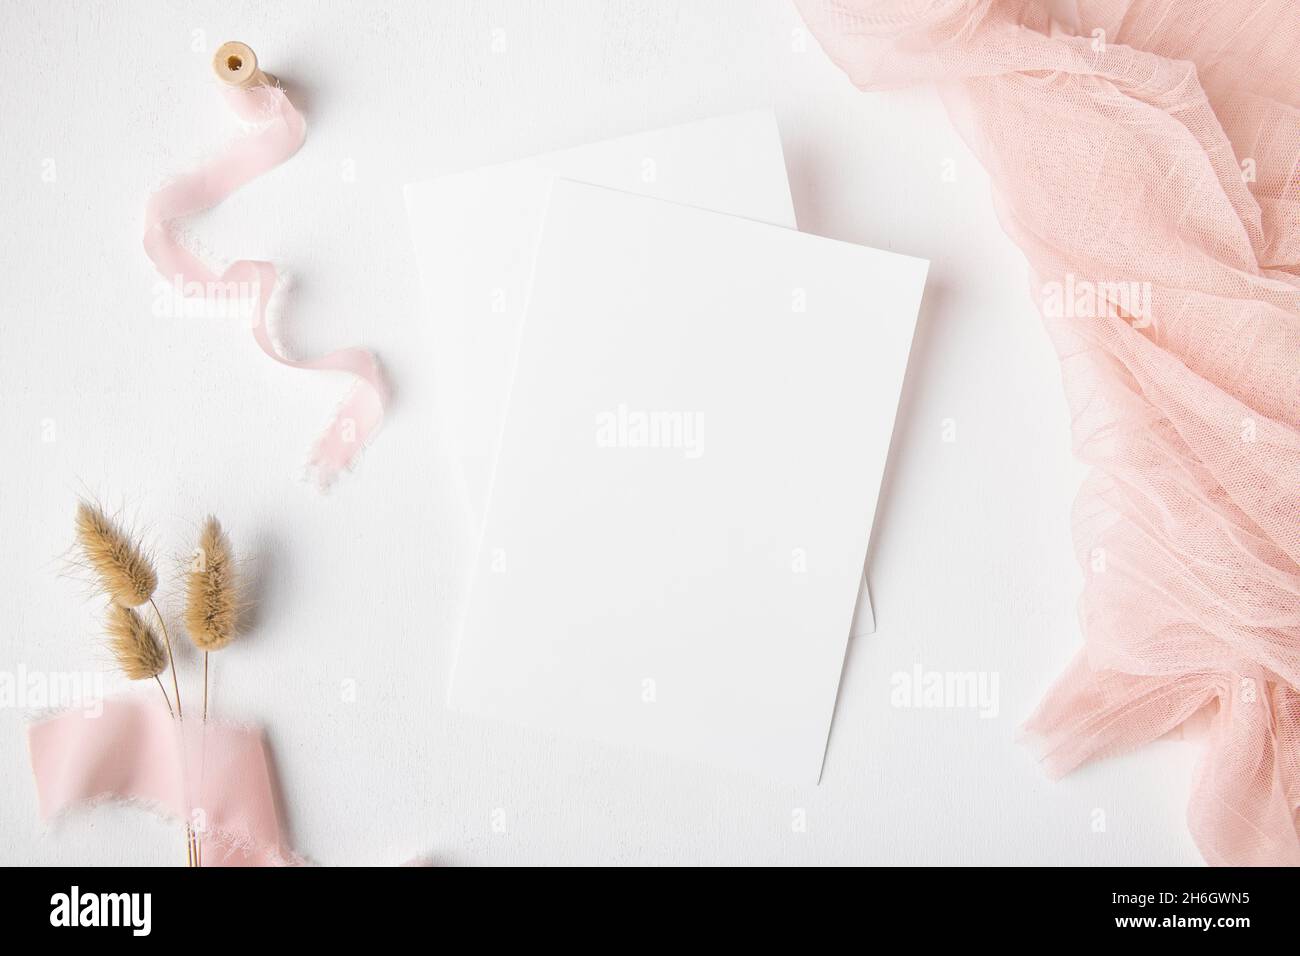 Zwei weiße Hochzeit Einladung Karte mockup auf weißem Tischhintergrund mit rosa Terrakotta-Dekoration und trockenem Gras, minimalistisches mockup 5x7 Verhältnis, ähnlich Stockfoto